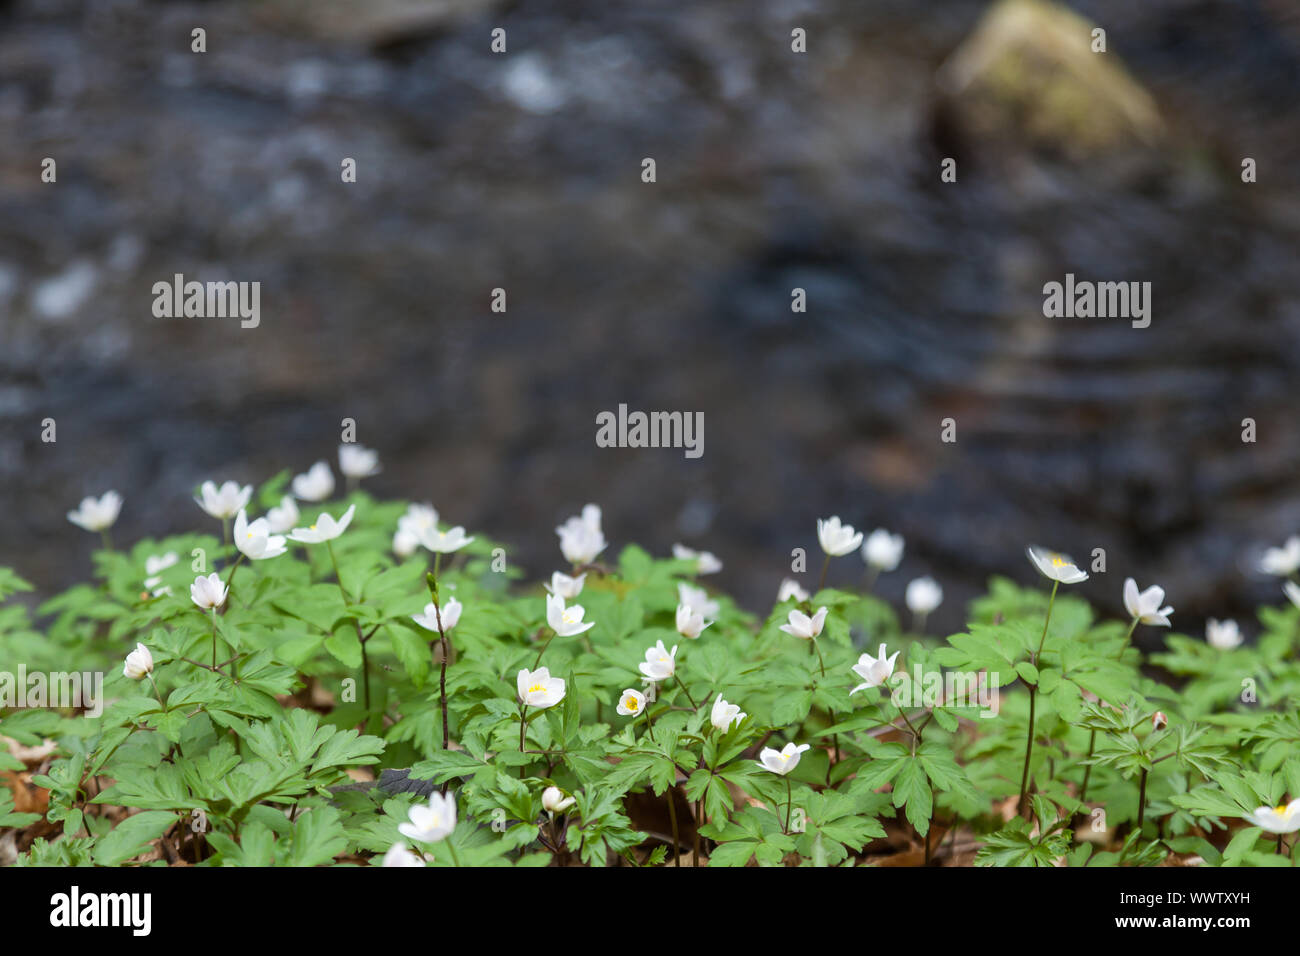 flowering anemones Stock Photo